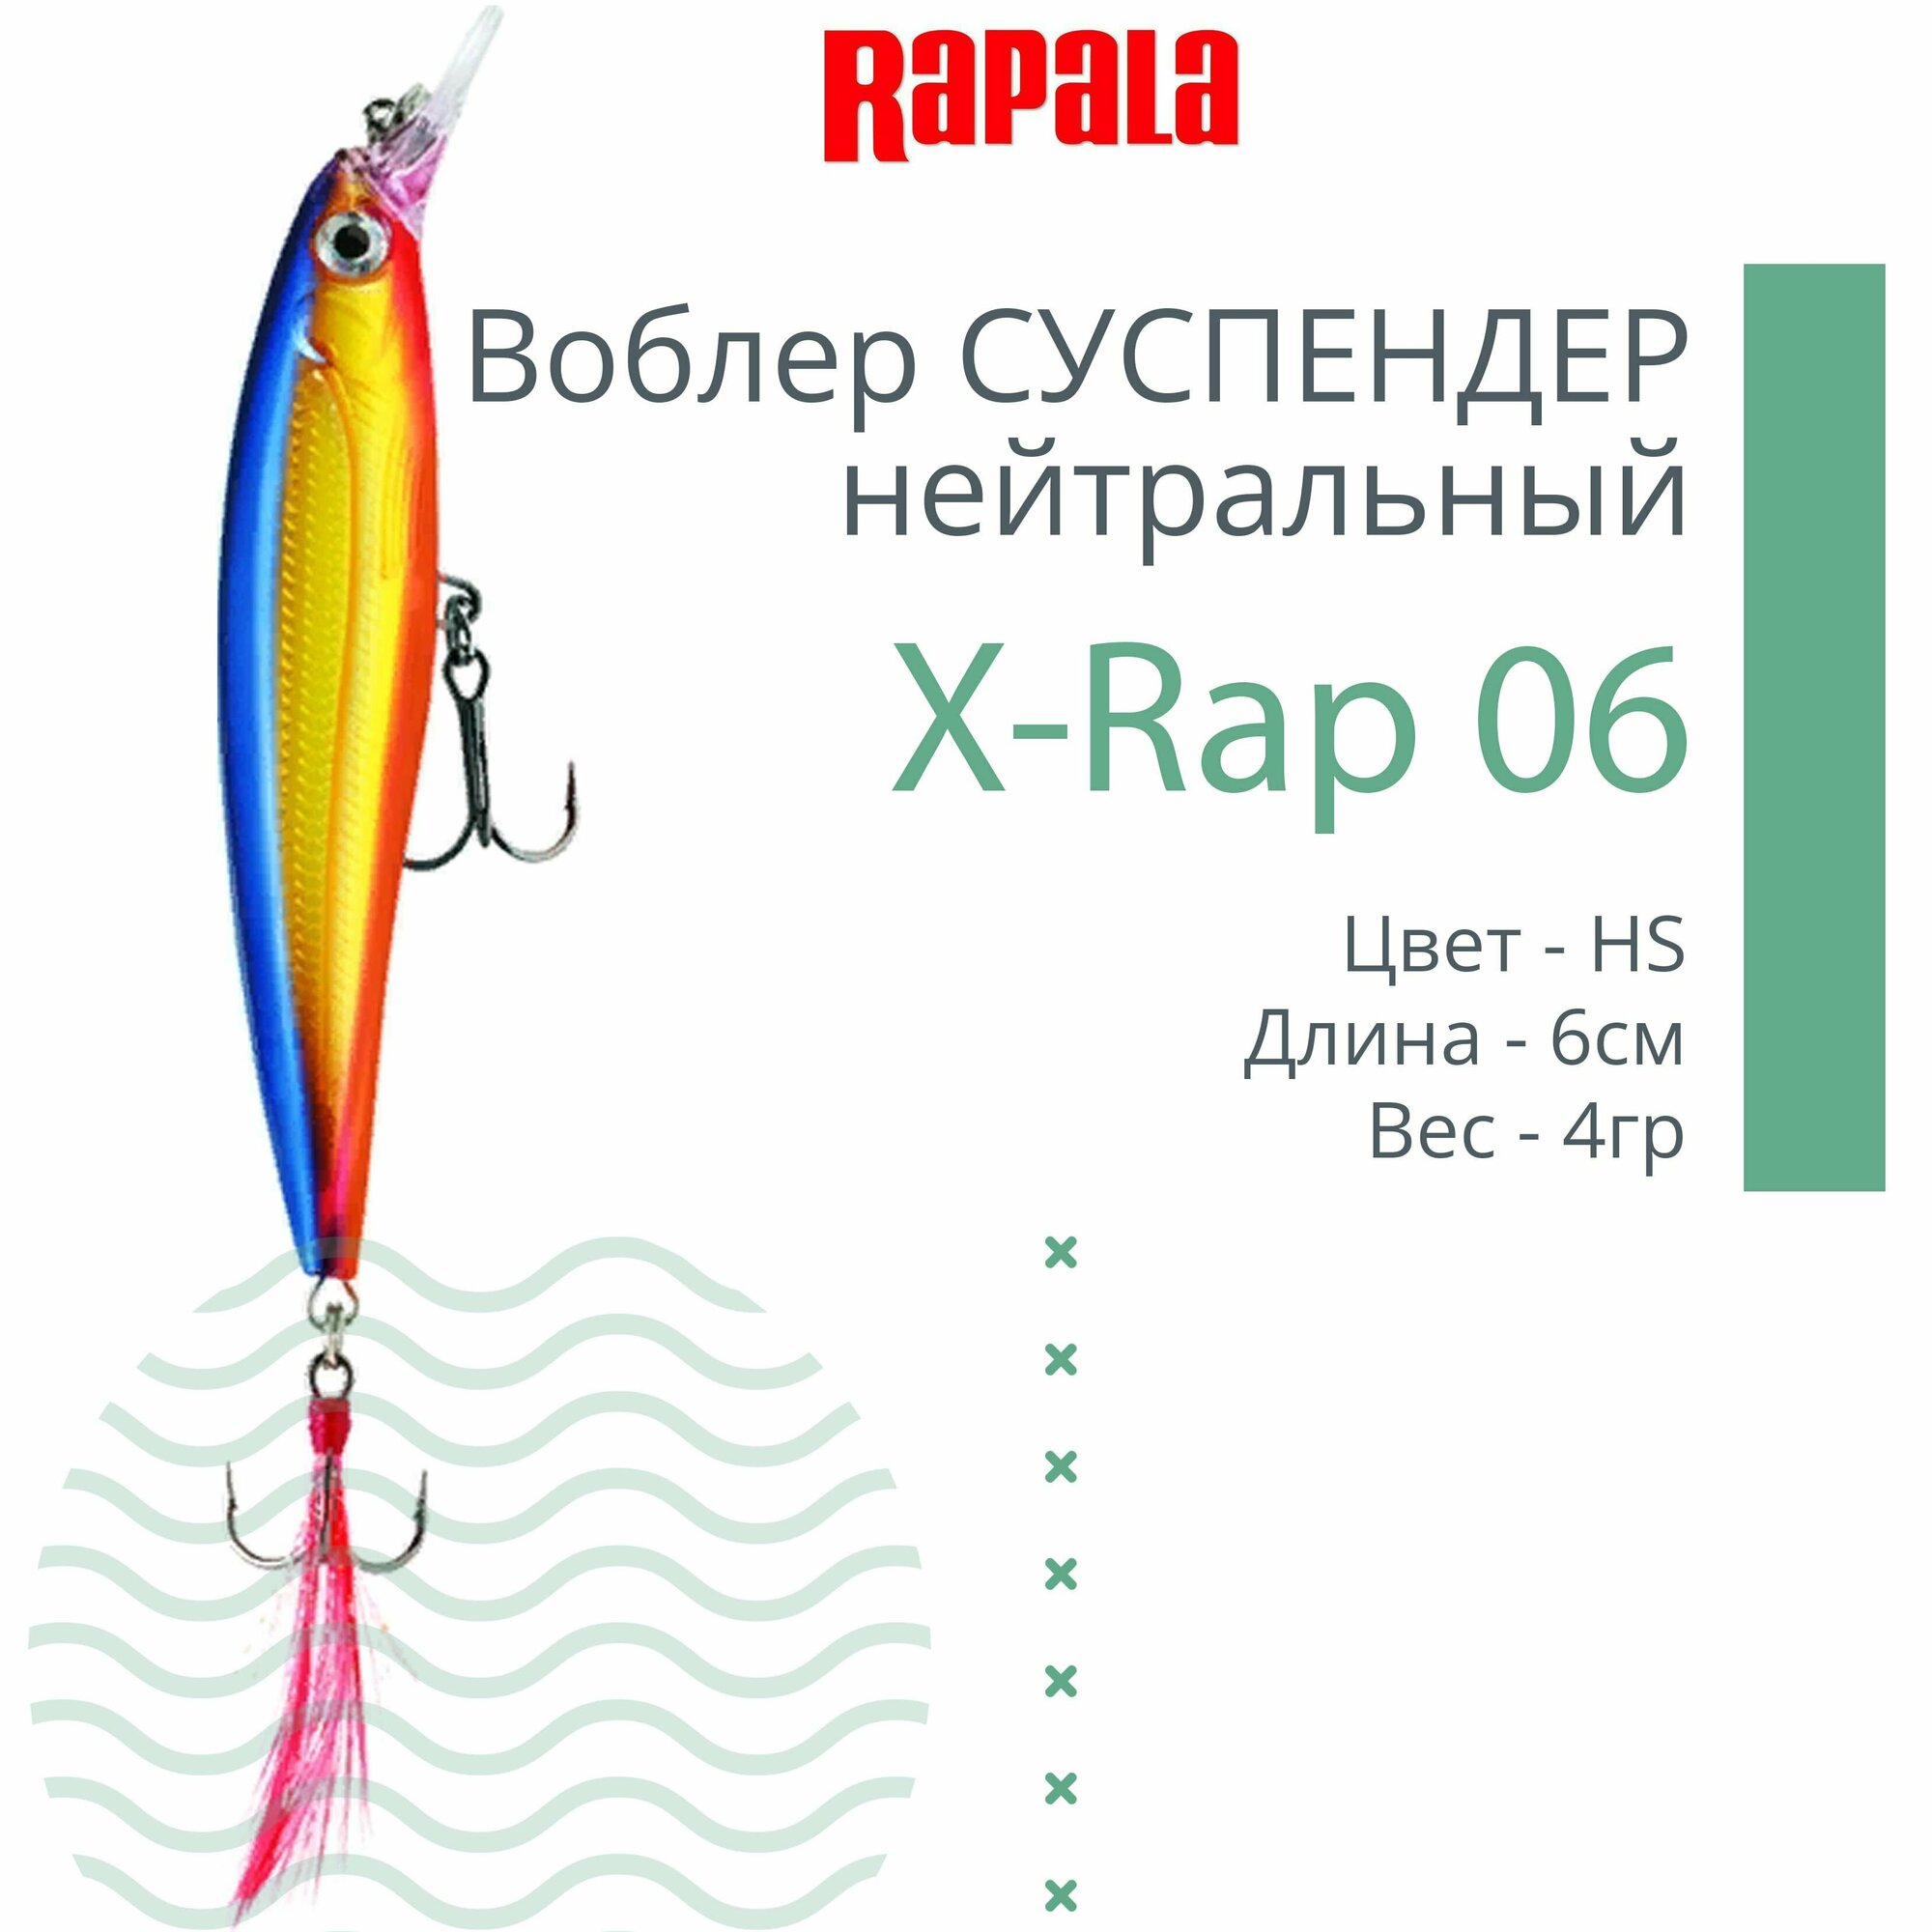 Воблер для рыбалки RAPALA X-Rap 06, 6см, 4гр, цвет HS, нейтральный